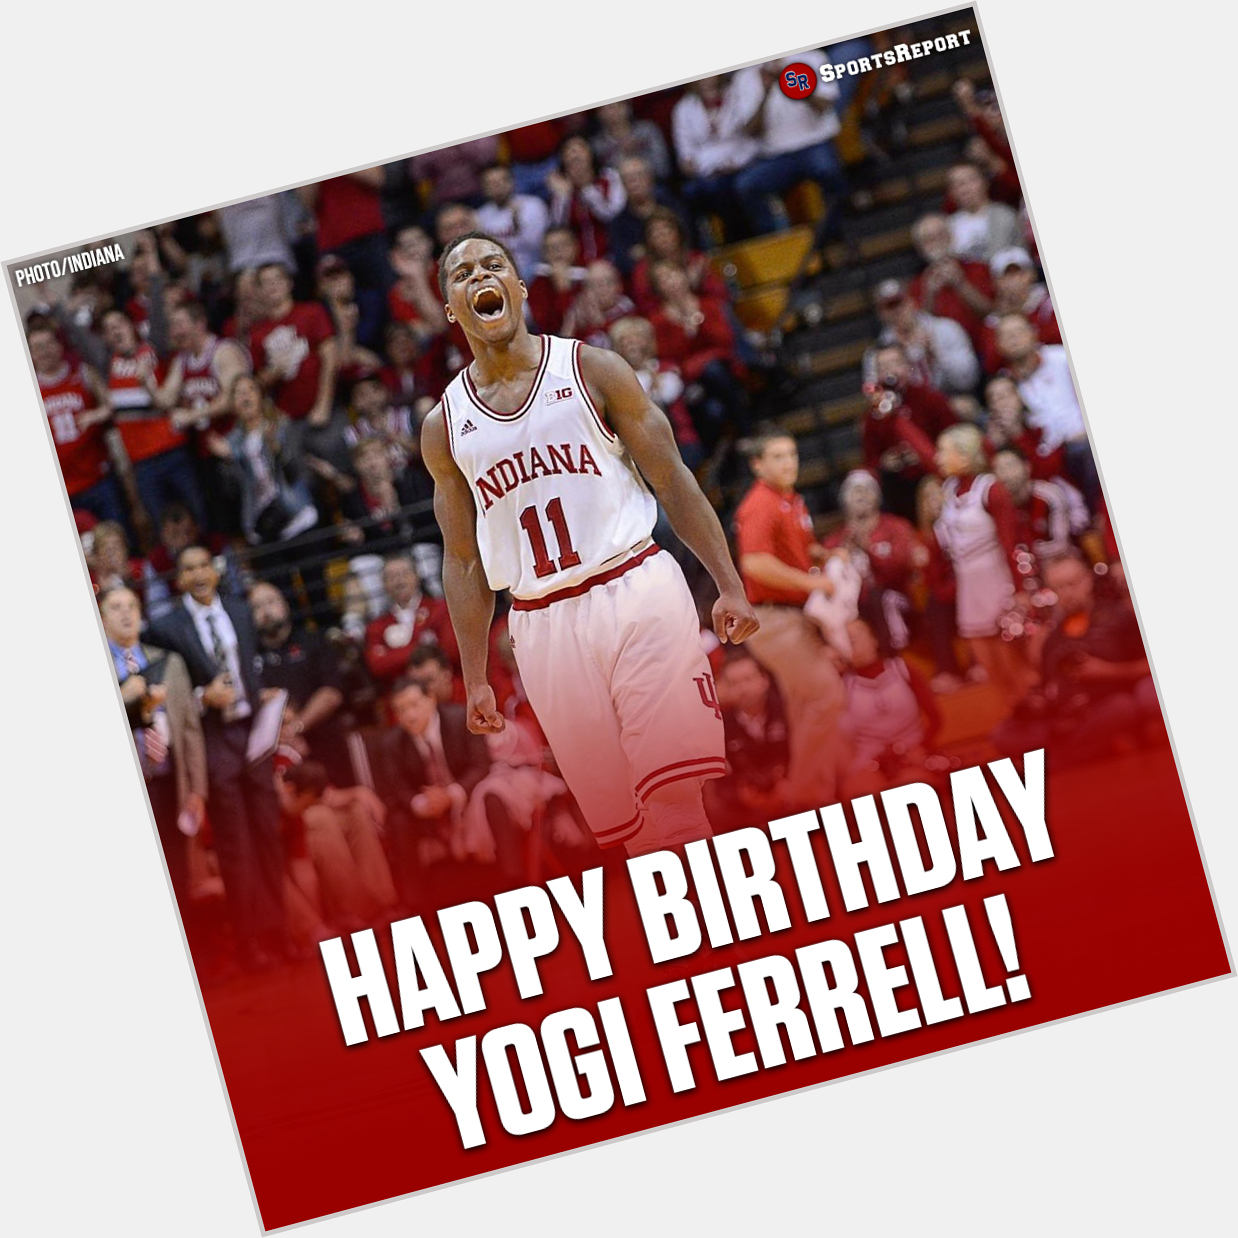  Fans, let\s wish Yogi Ferrell a Happy Birthday! 